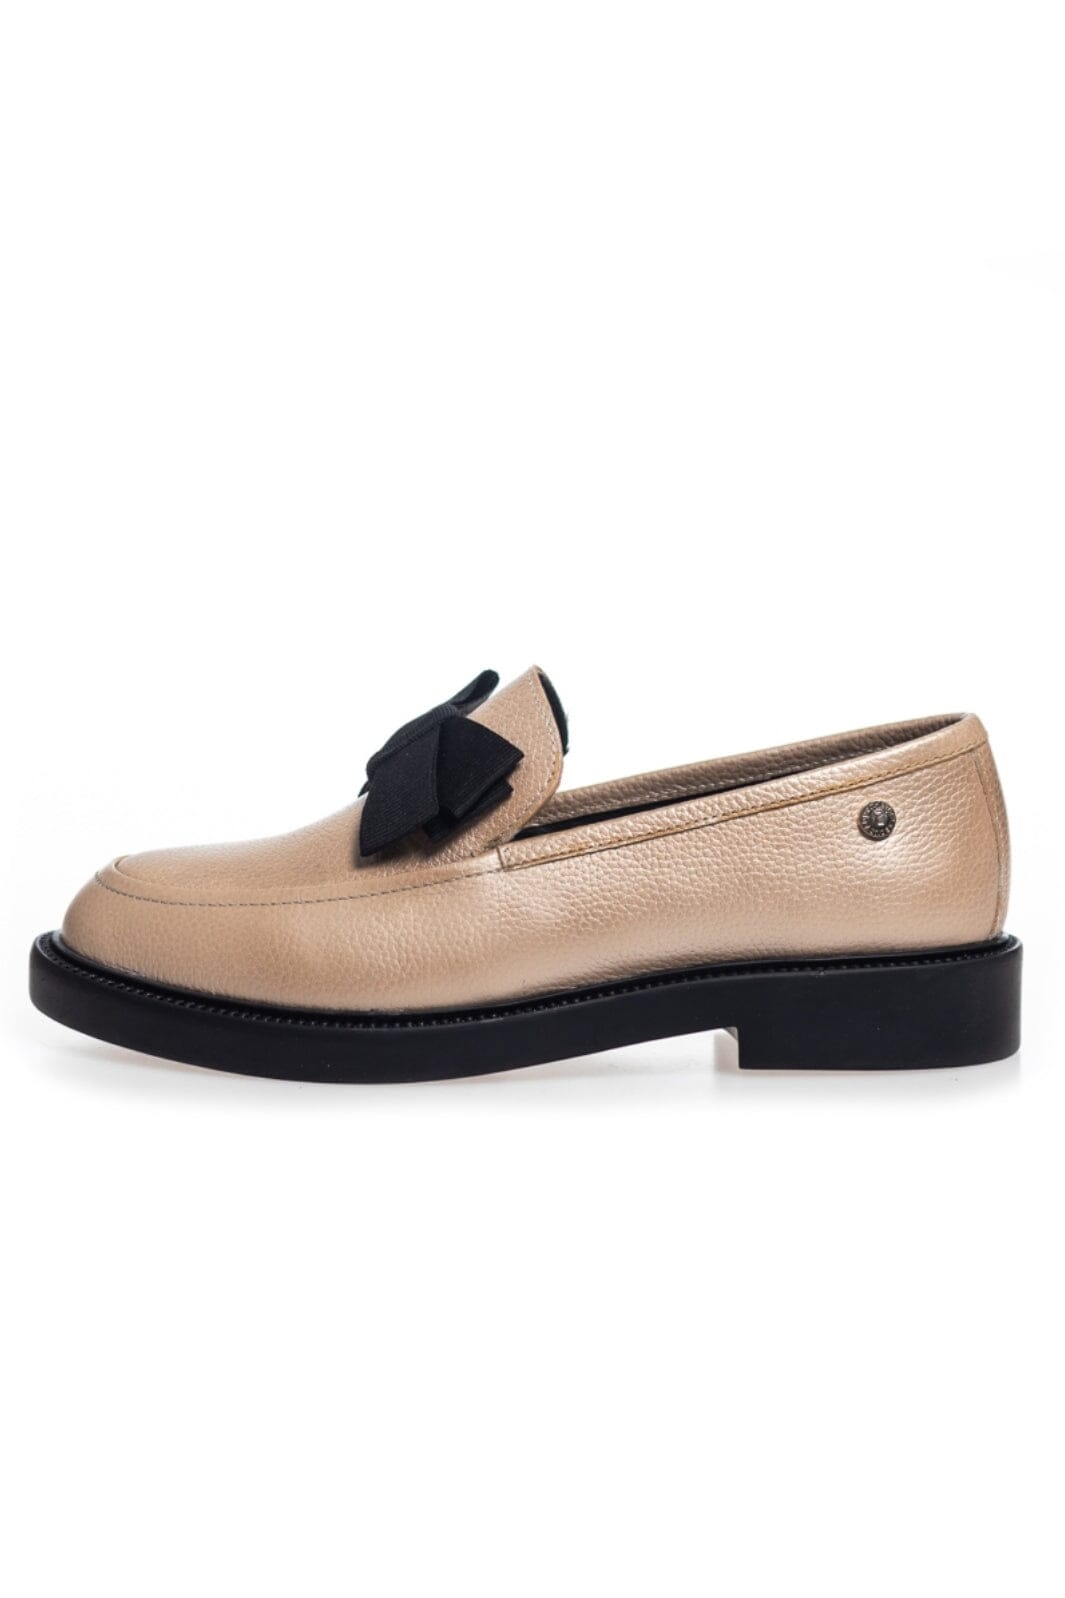 Copenhagen Shoes - Surround Me - 0051 Gold Loafers 